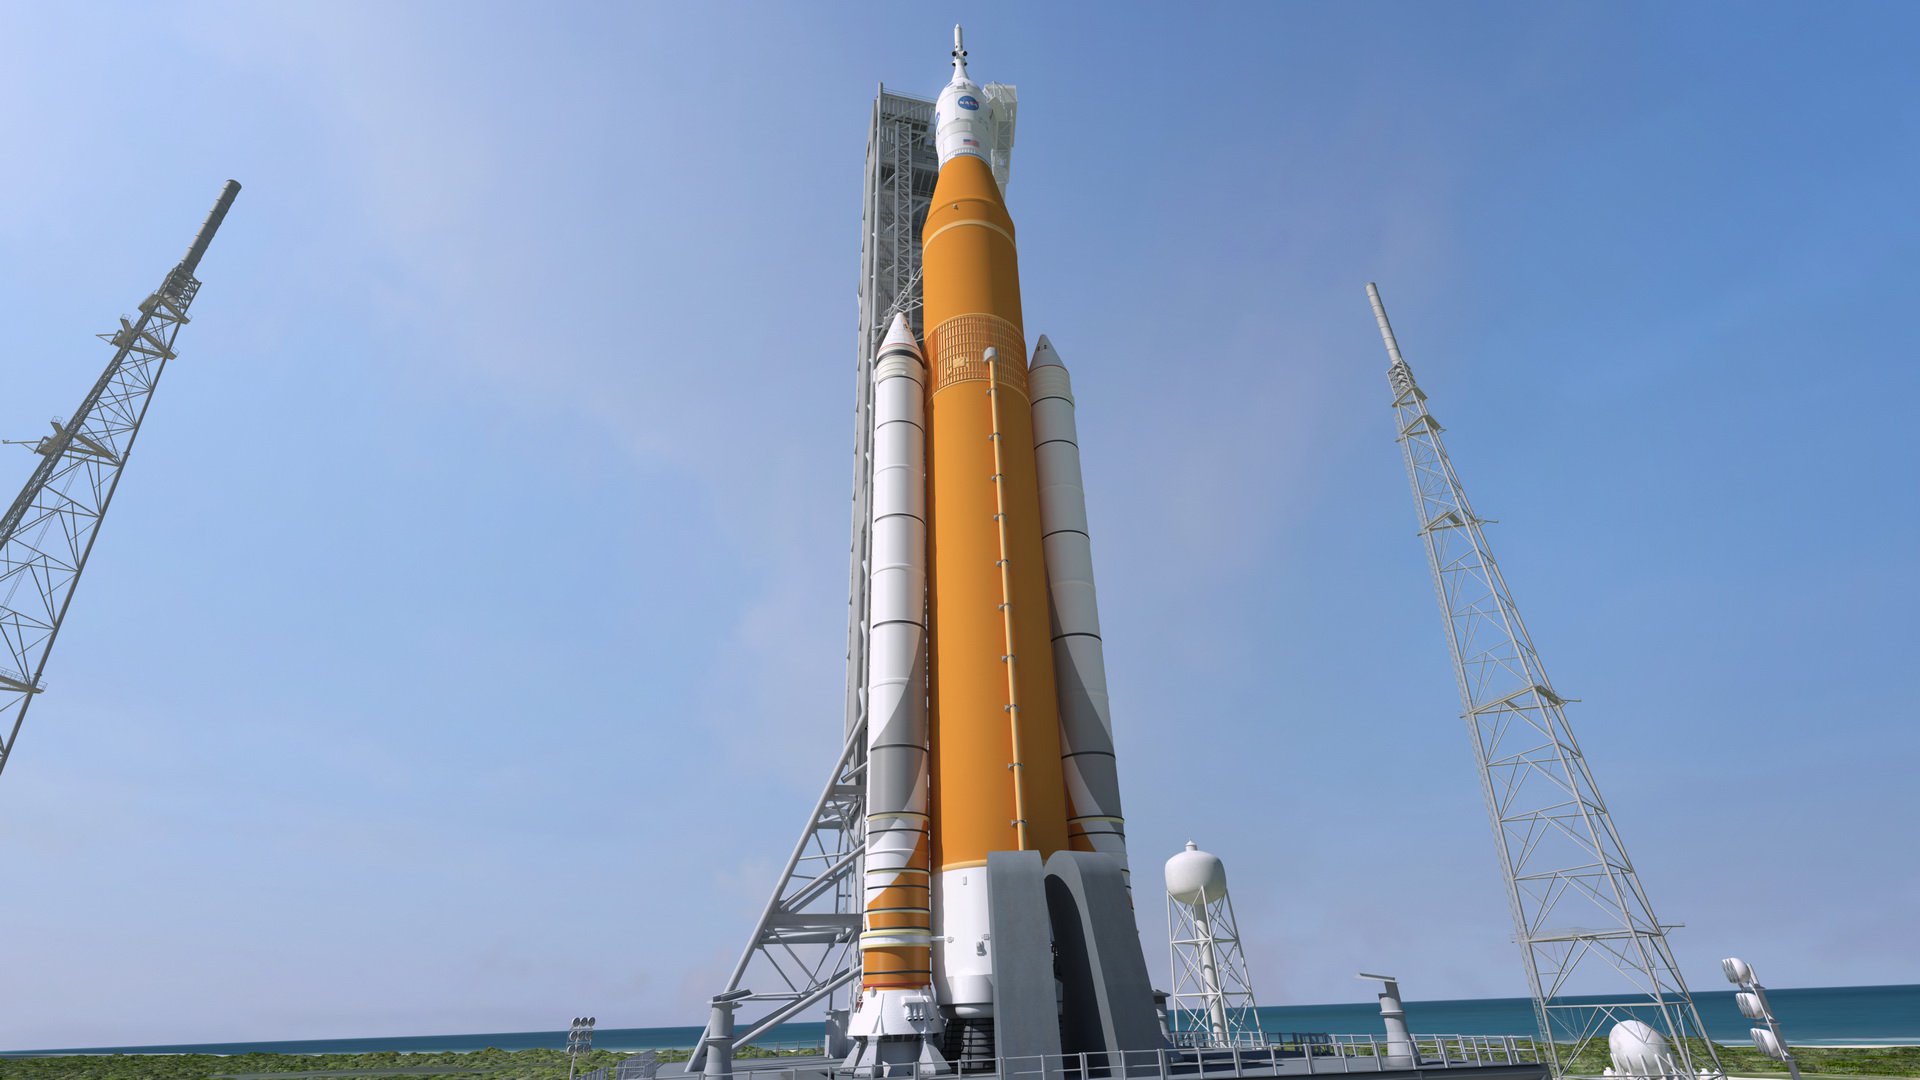 Inspekcja wykazała, że rakiety nośnej NASA SLS bardzo duże problemy